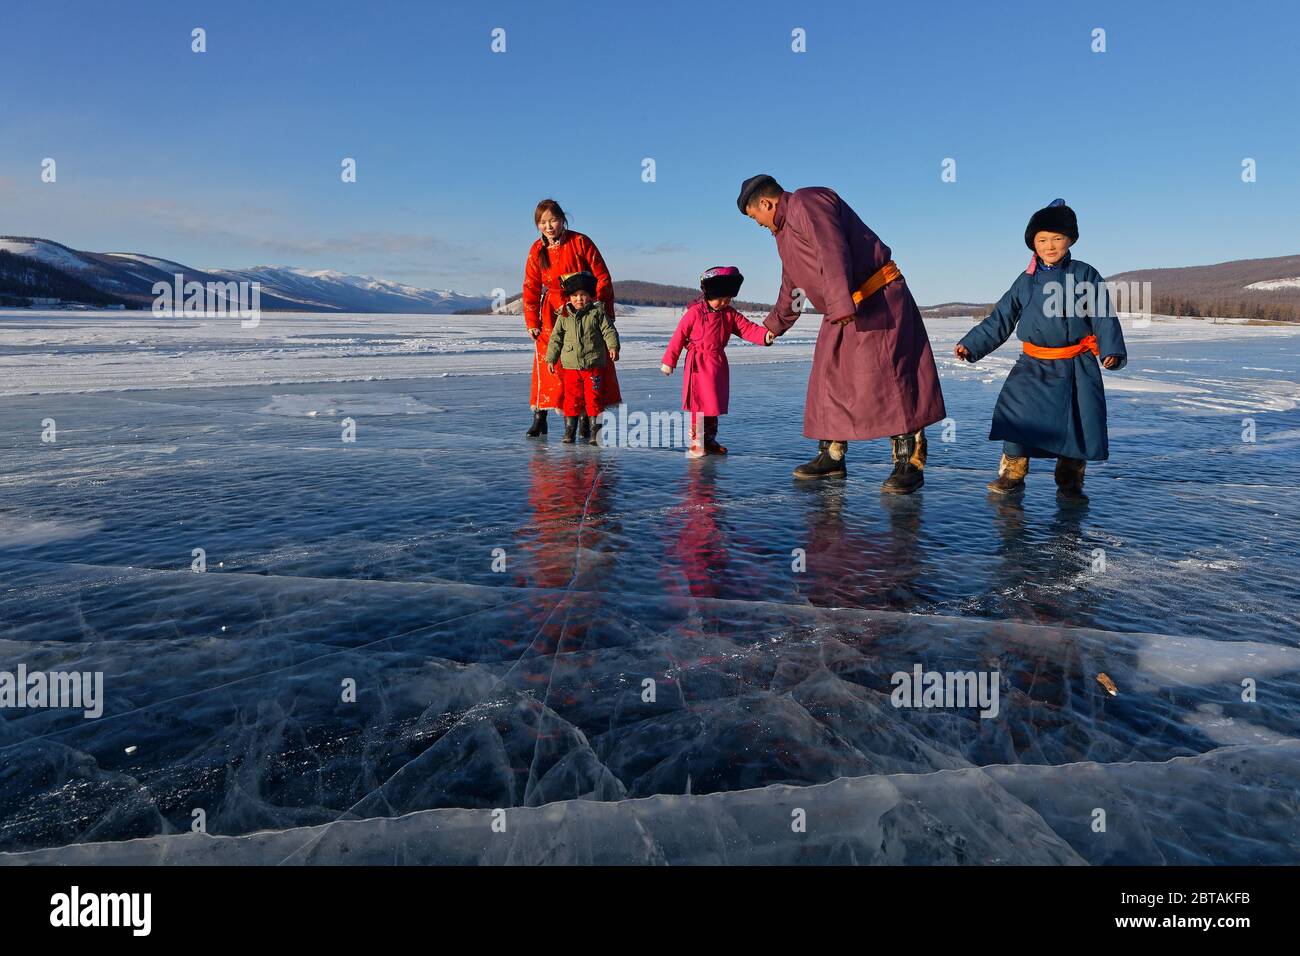 KHATGAL, MONGOLEI, 2. März 2020 : EINE mongolische Familie, in traditioneller Kleidung gekleidet, geht auf dem gefrorenen See spazieren. Stockfoto